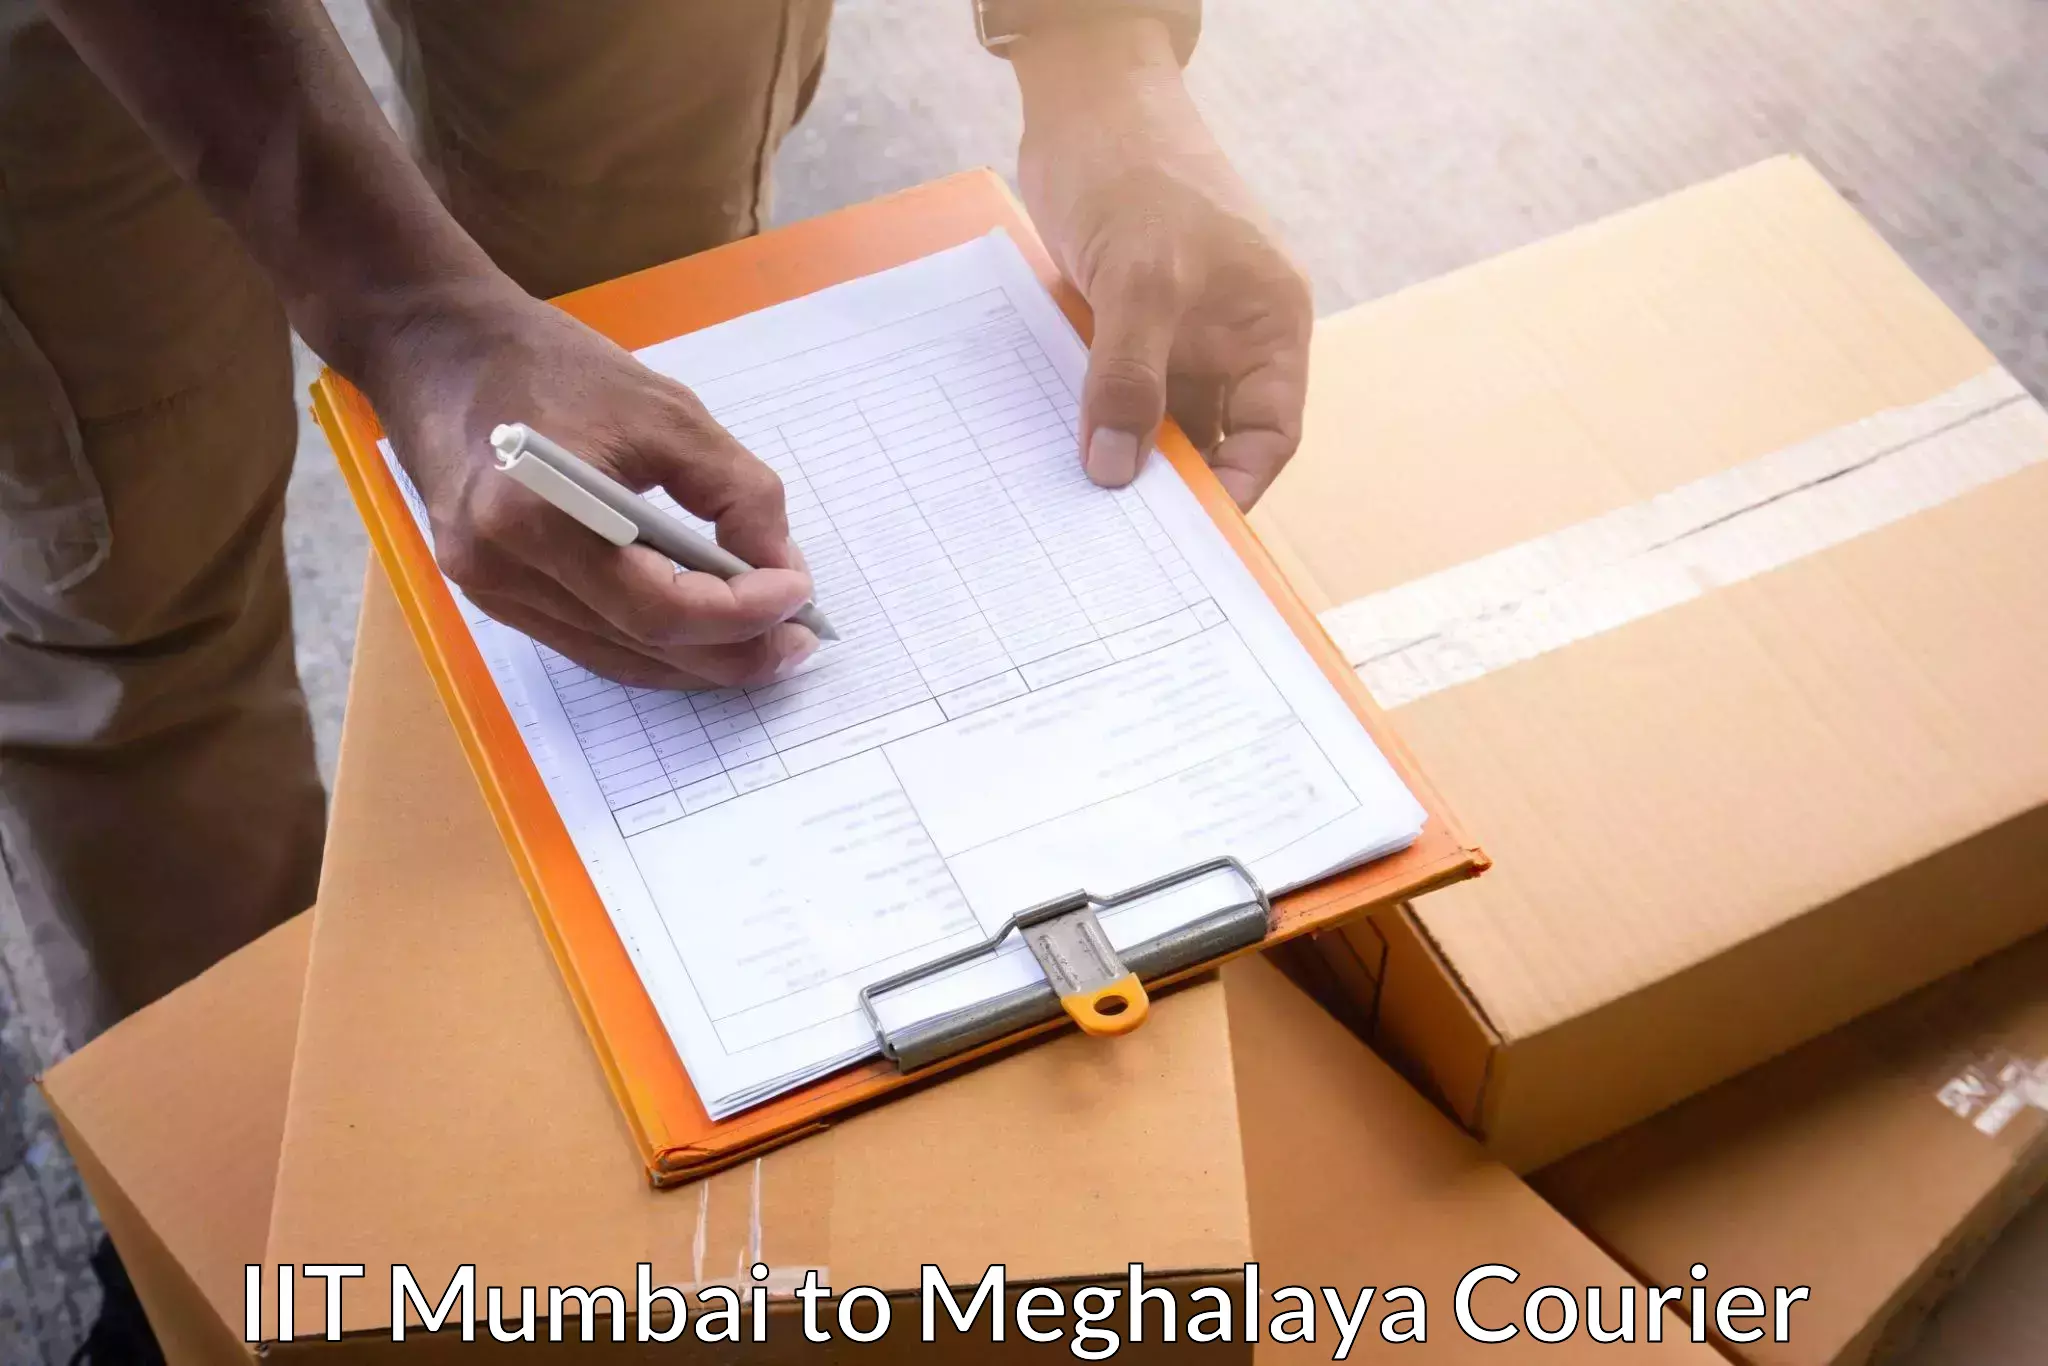 Online package tracking IIT Mumbai to NIT Meghalaya